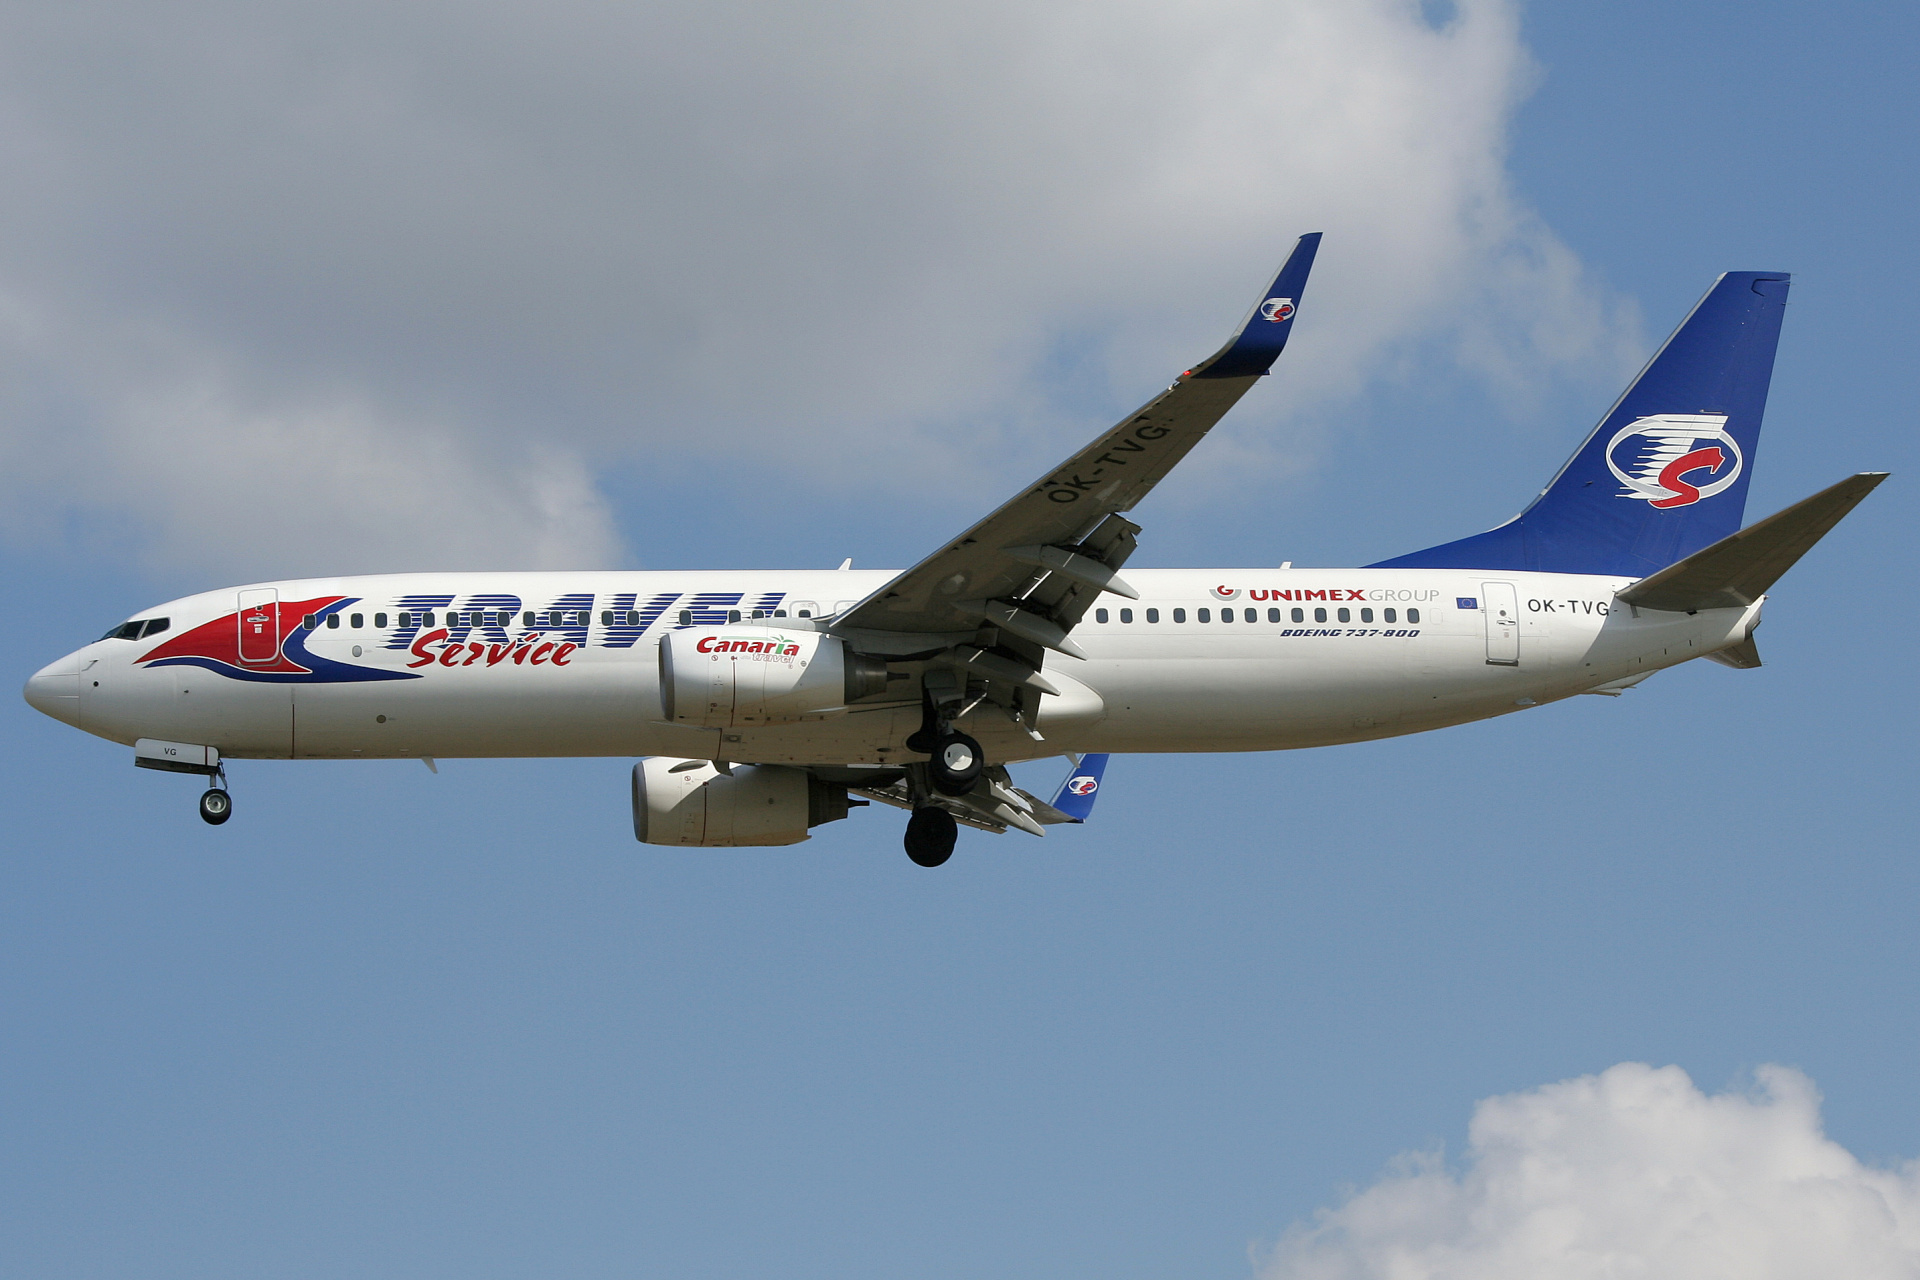 OK-TVG (Samoloty » Spotting na EPWA » Boeing 737-800 » Travel Service Airlines)